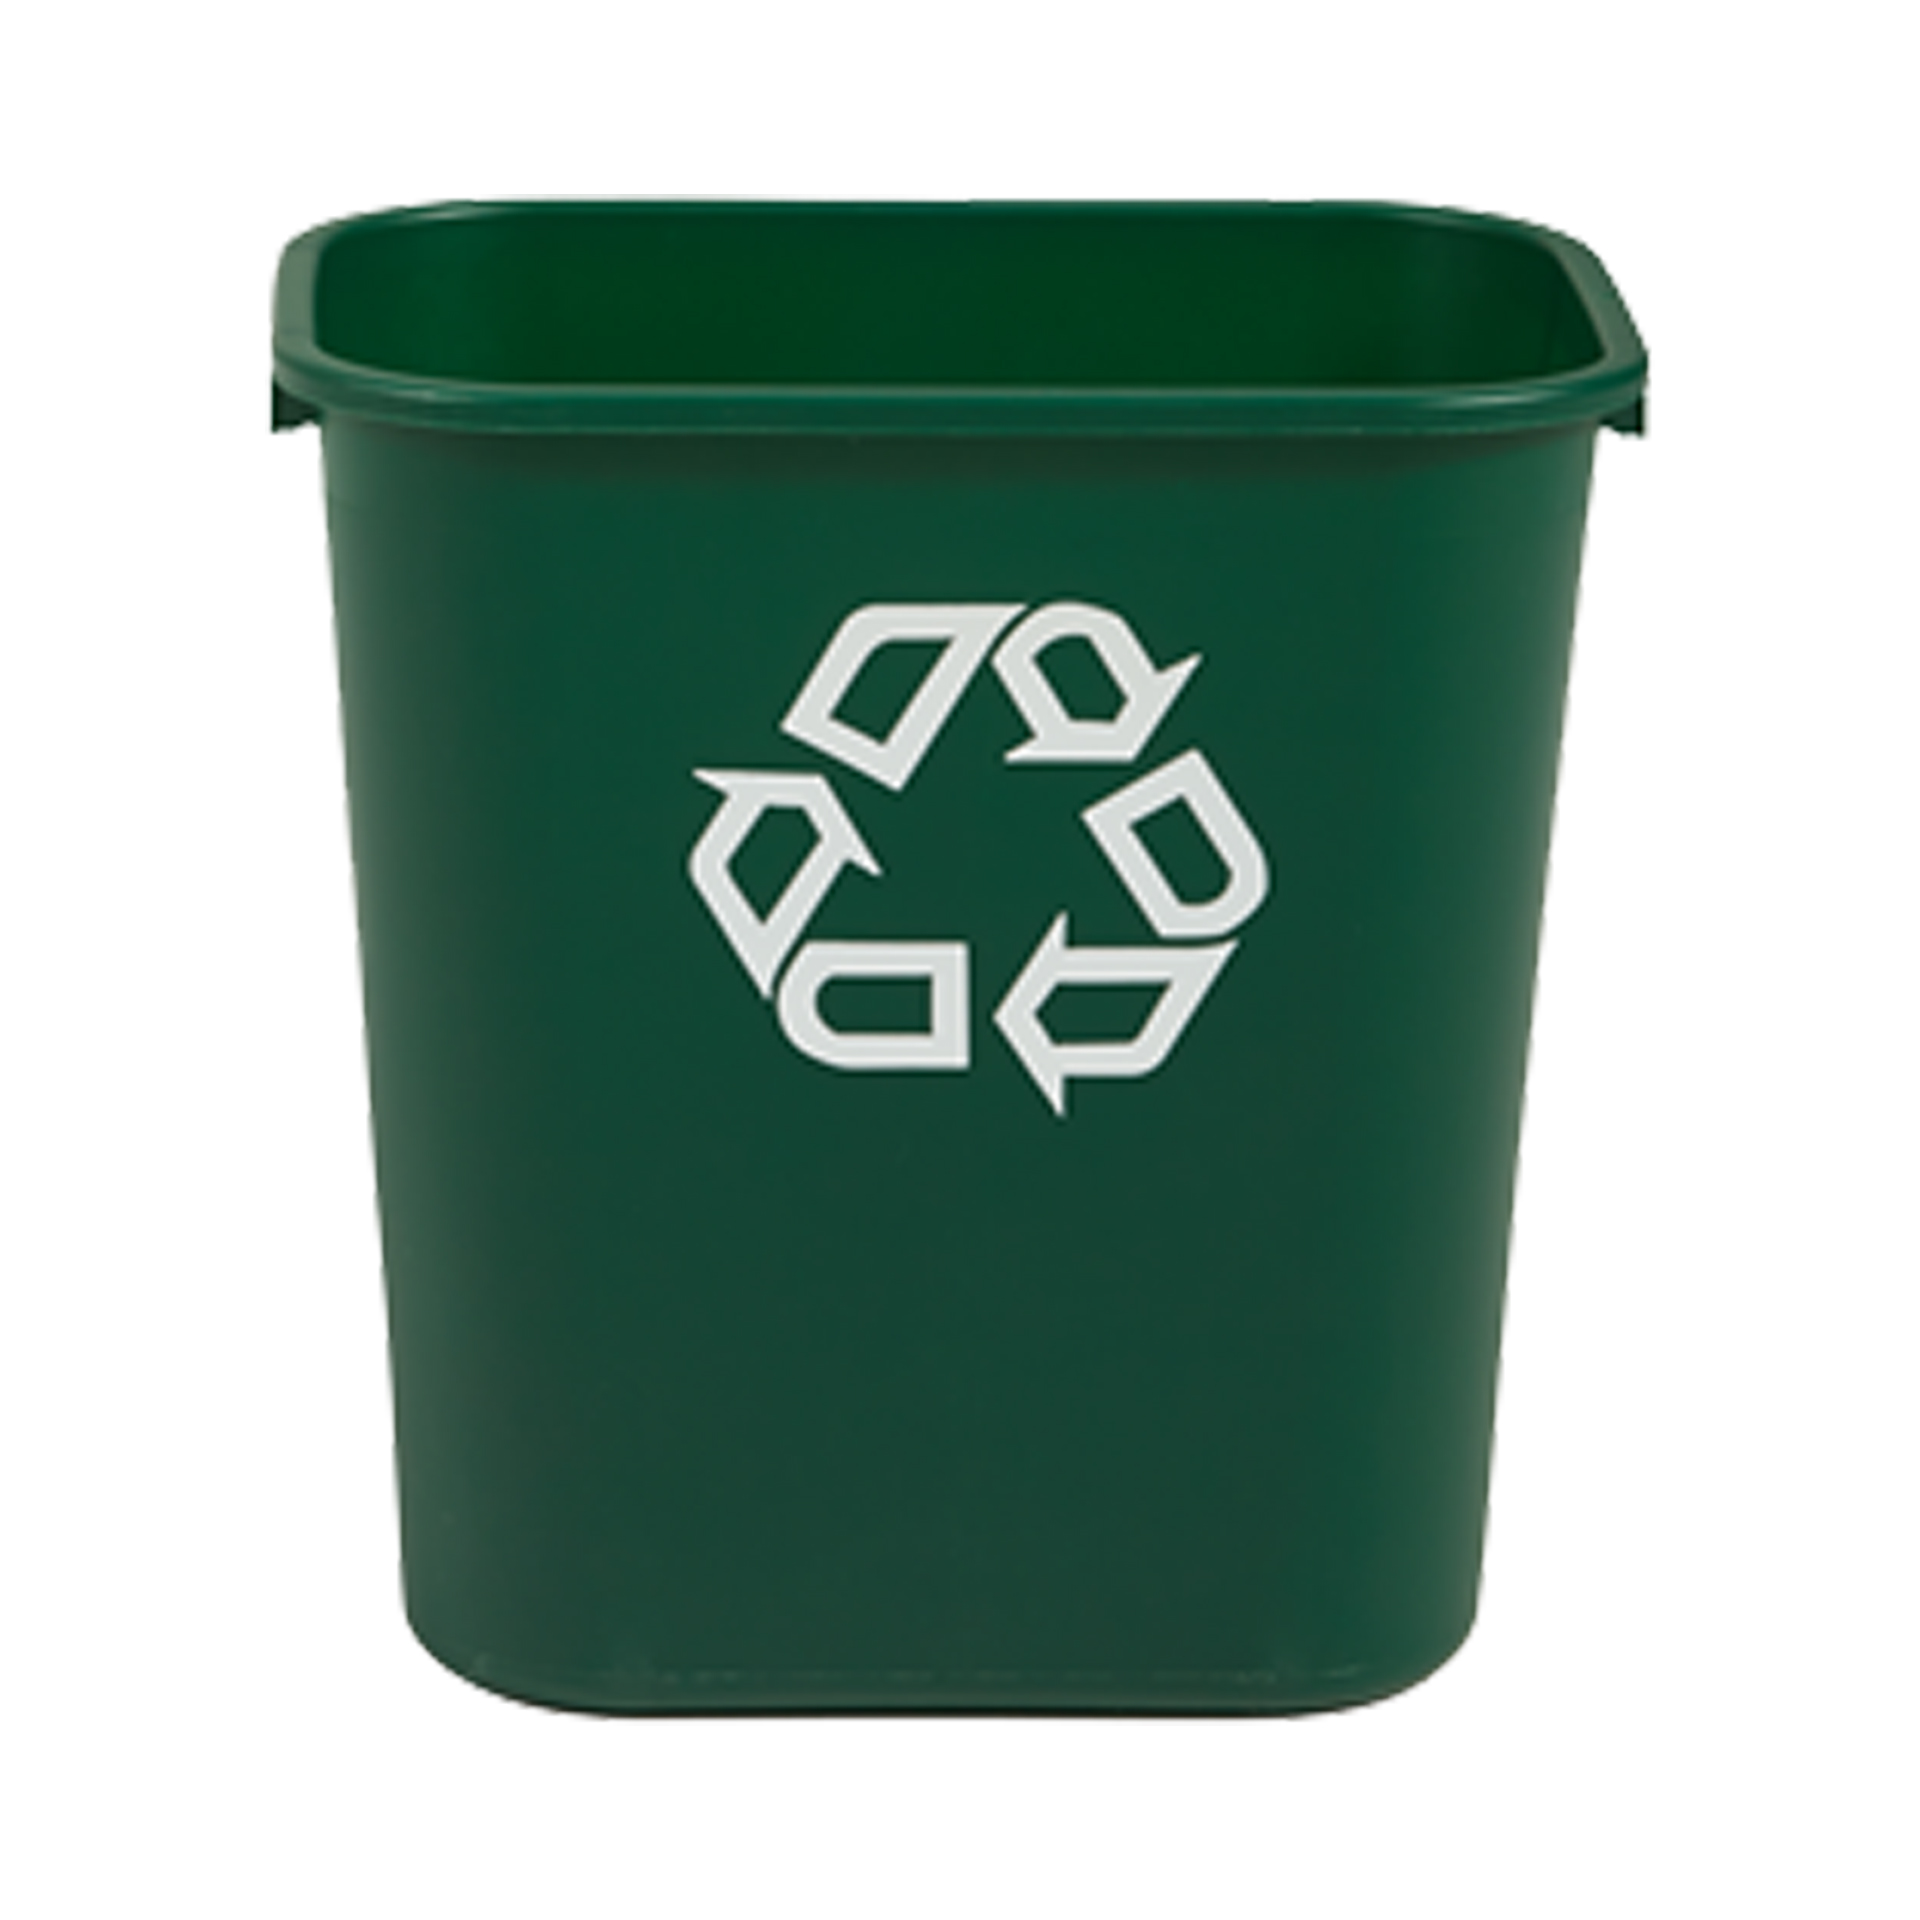 ถังขยะพลาสติก ขนาดกลาง 26.5 ลิตร สีเขียว